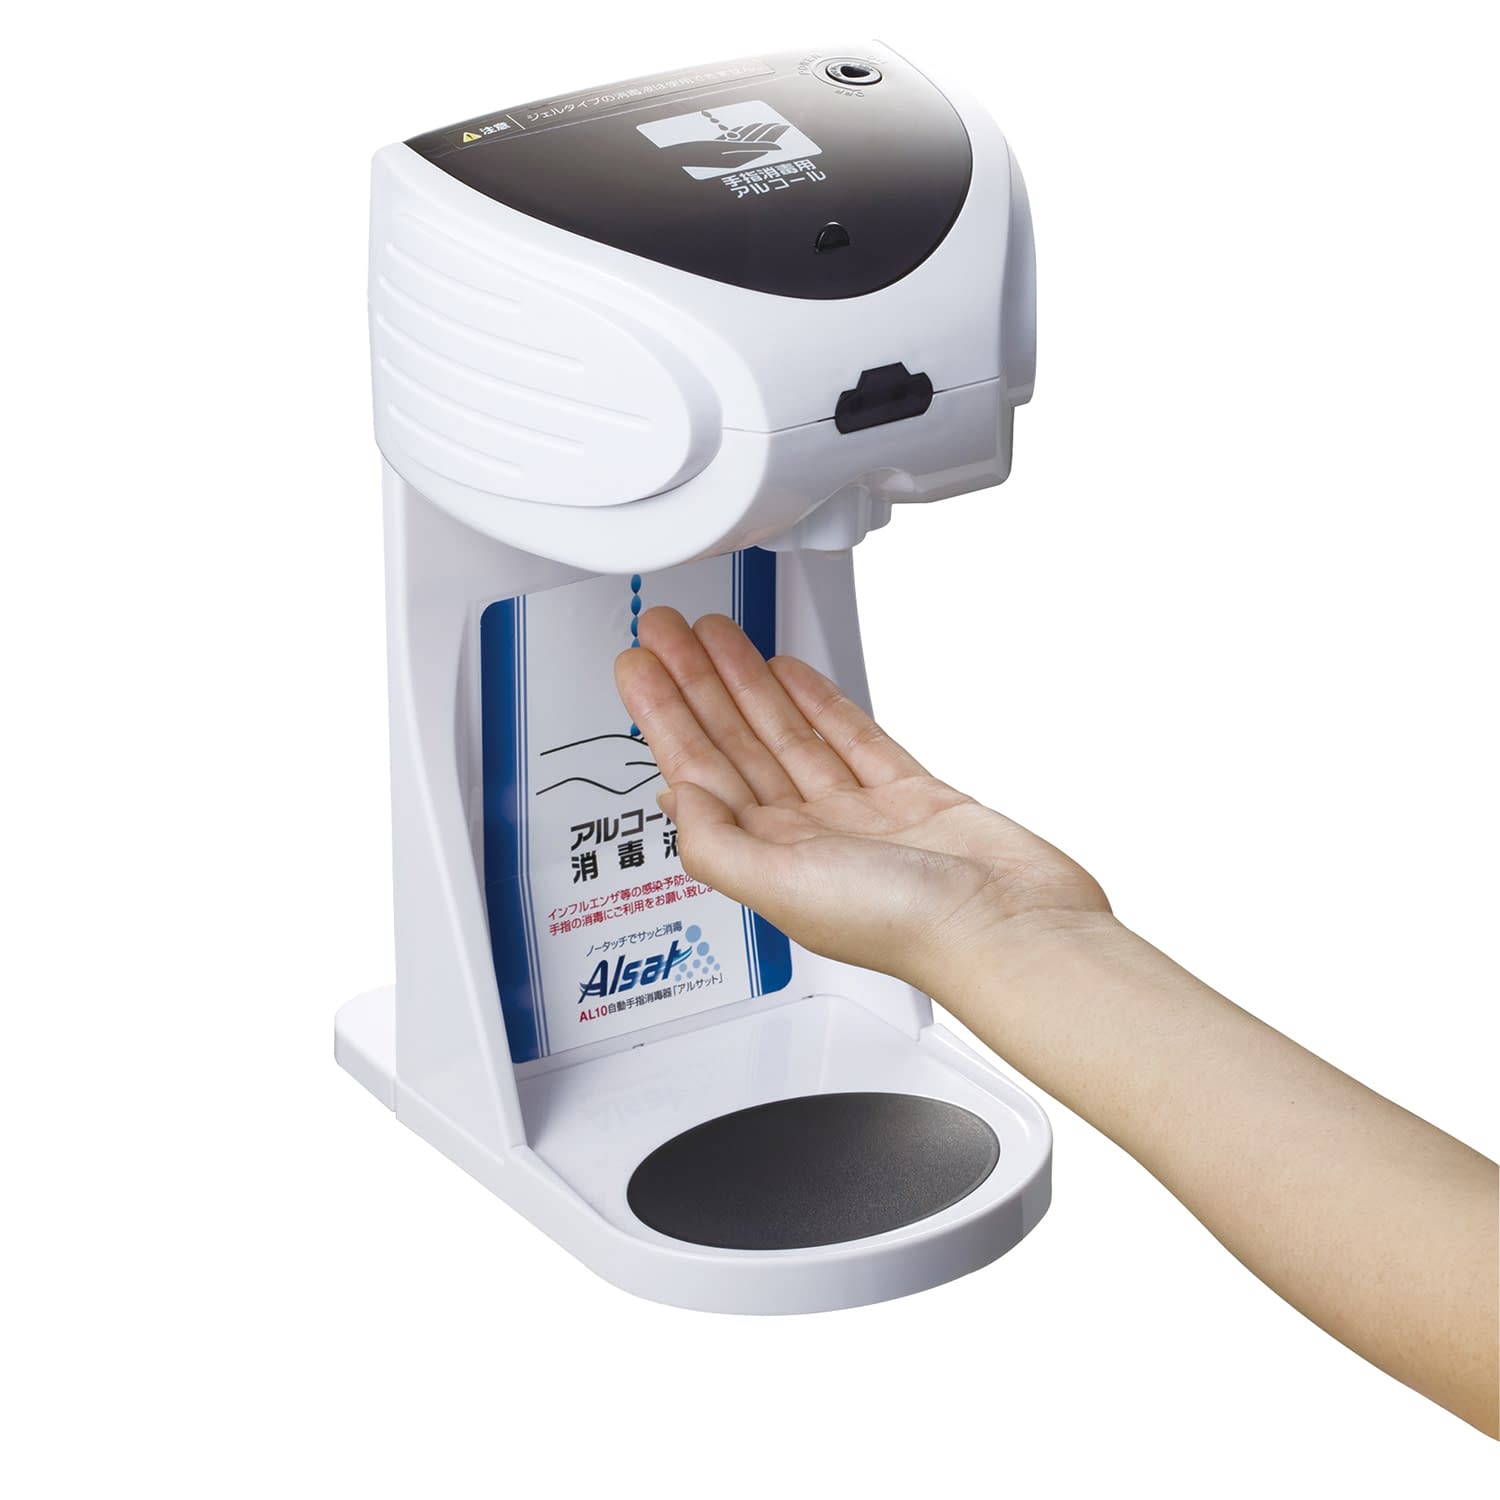 (23-6801-00)自動手指消毒器アルサット AL10 ｼﾞﾄﾞｳｼｭｼｼｮｳﾄﾞｸｷｱﾙｻｯﾄ【1台単位】【2019年カタログ商品】